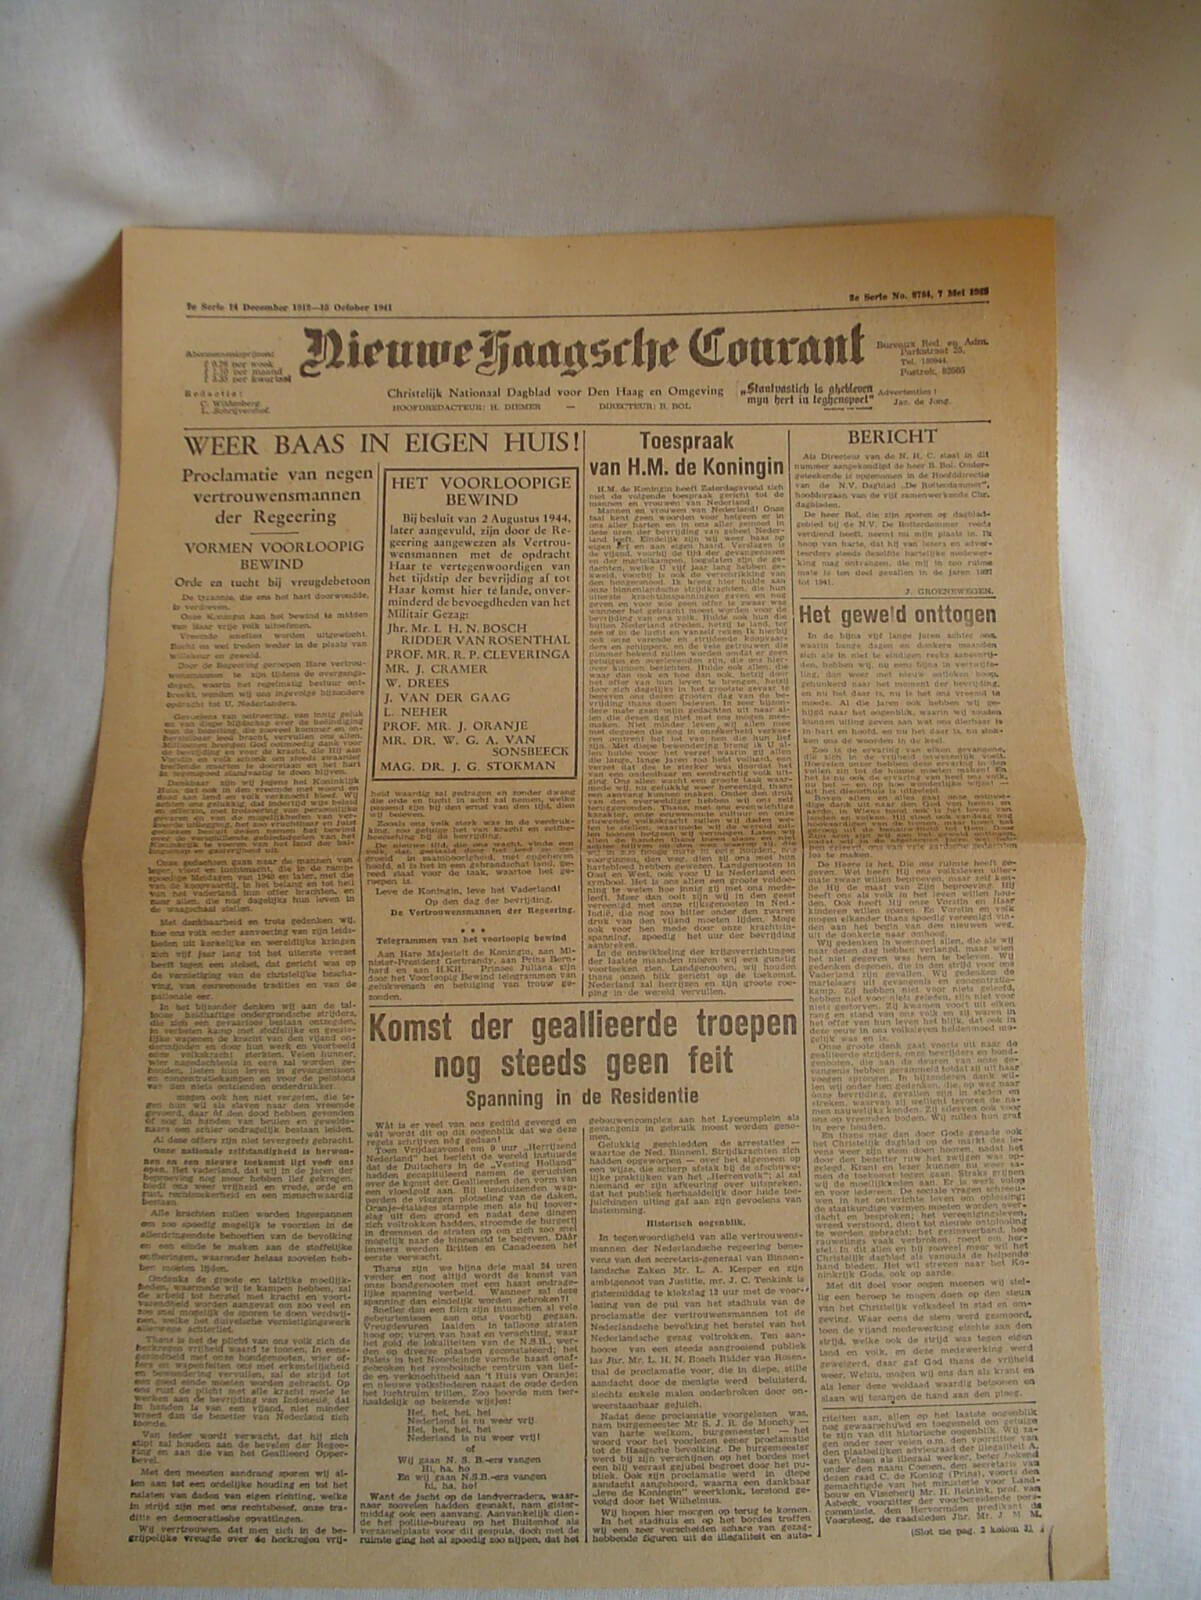 Kranten bevrijding de tweede wereldoorlog krant wo2 1945